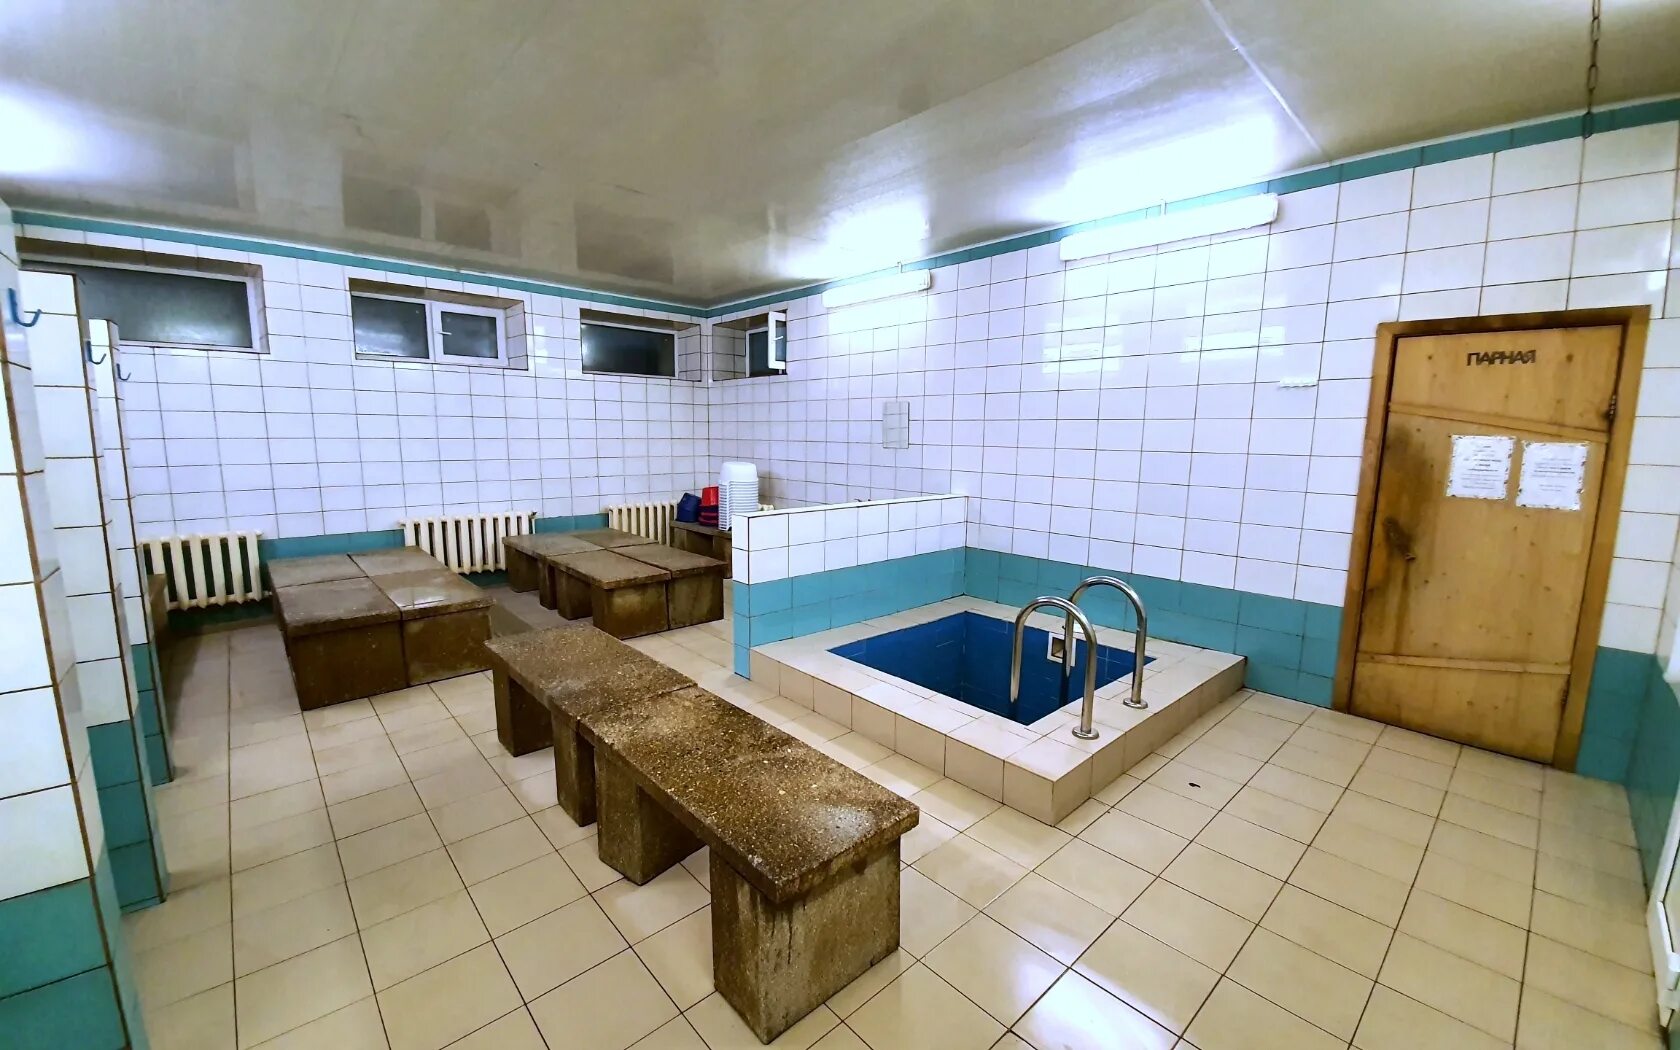 Общая баня для мужчин москва. Баня на университетском, Тверь. Общественная баня Эстония. Баня номер 6 Тверь. Благовещенская общественная баня.